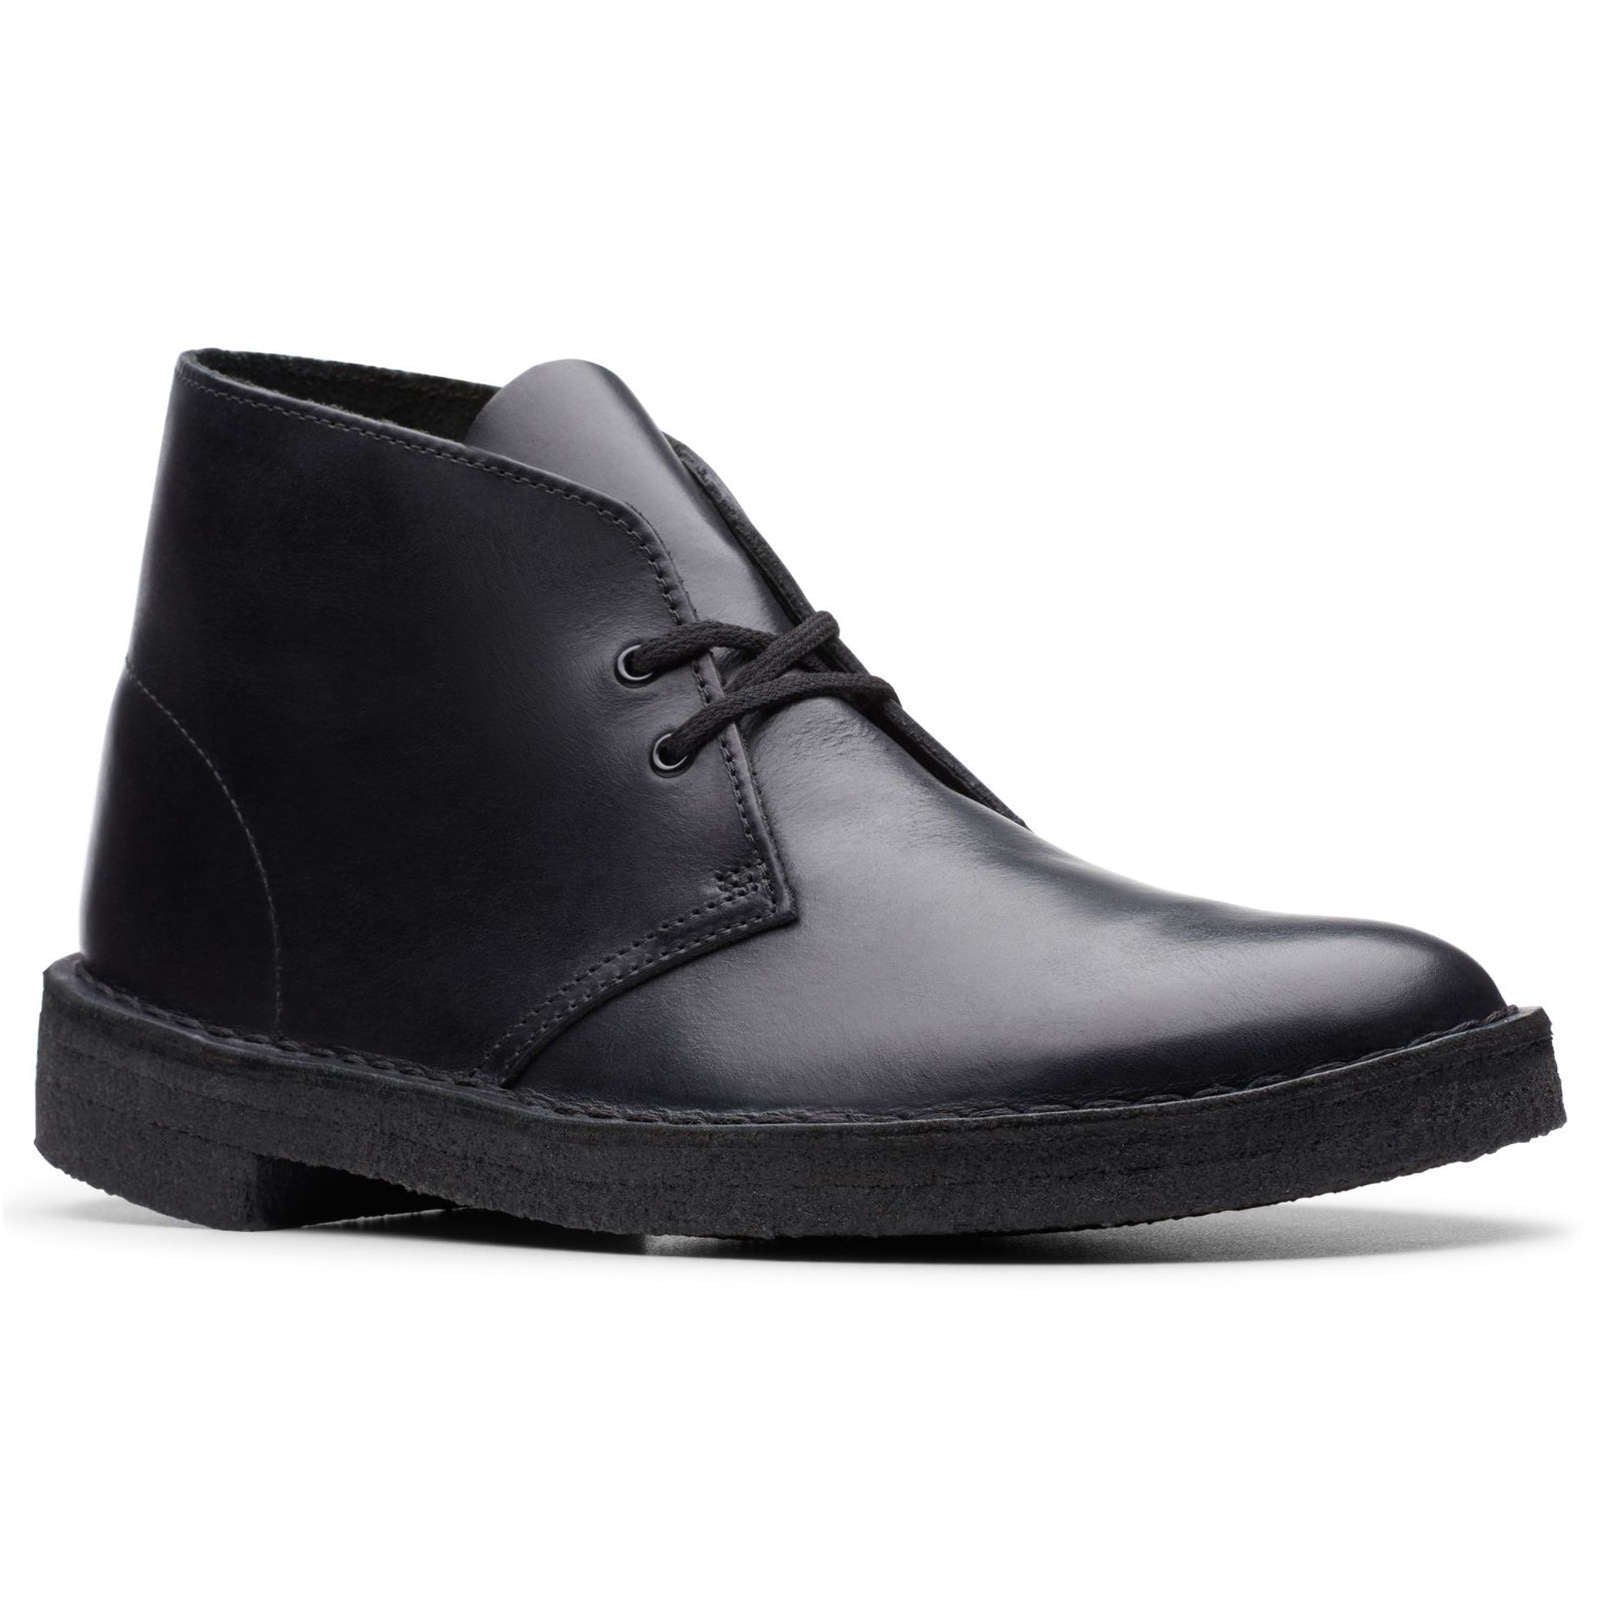 Clarks Originals Desert Boots Polished Leather Men's Boots#color_black